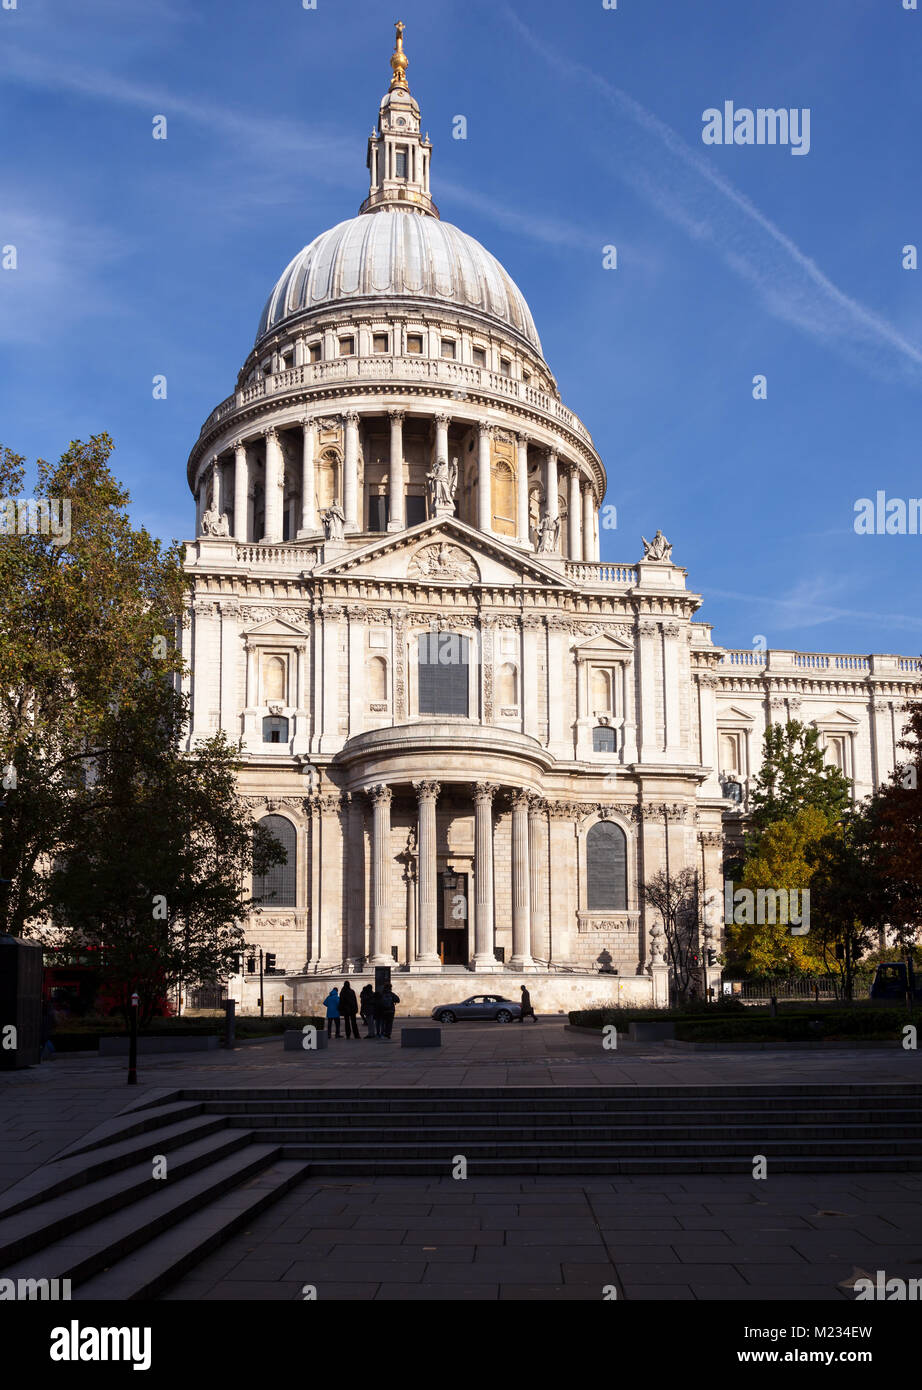 Londoner Stadtbild mit St Paul's Kathedrale, eines der berühmtesten und bekanntesten Sehenswürdigkeiten von London Stockfoto